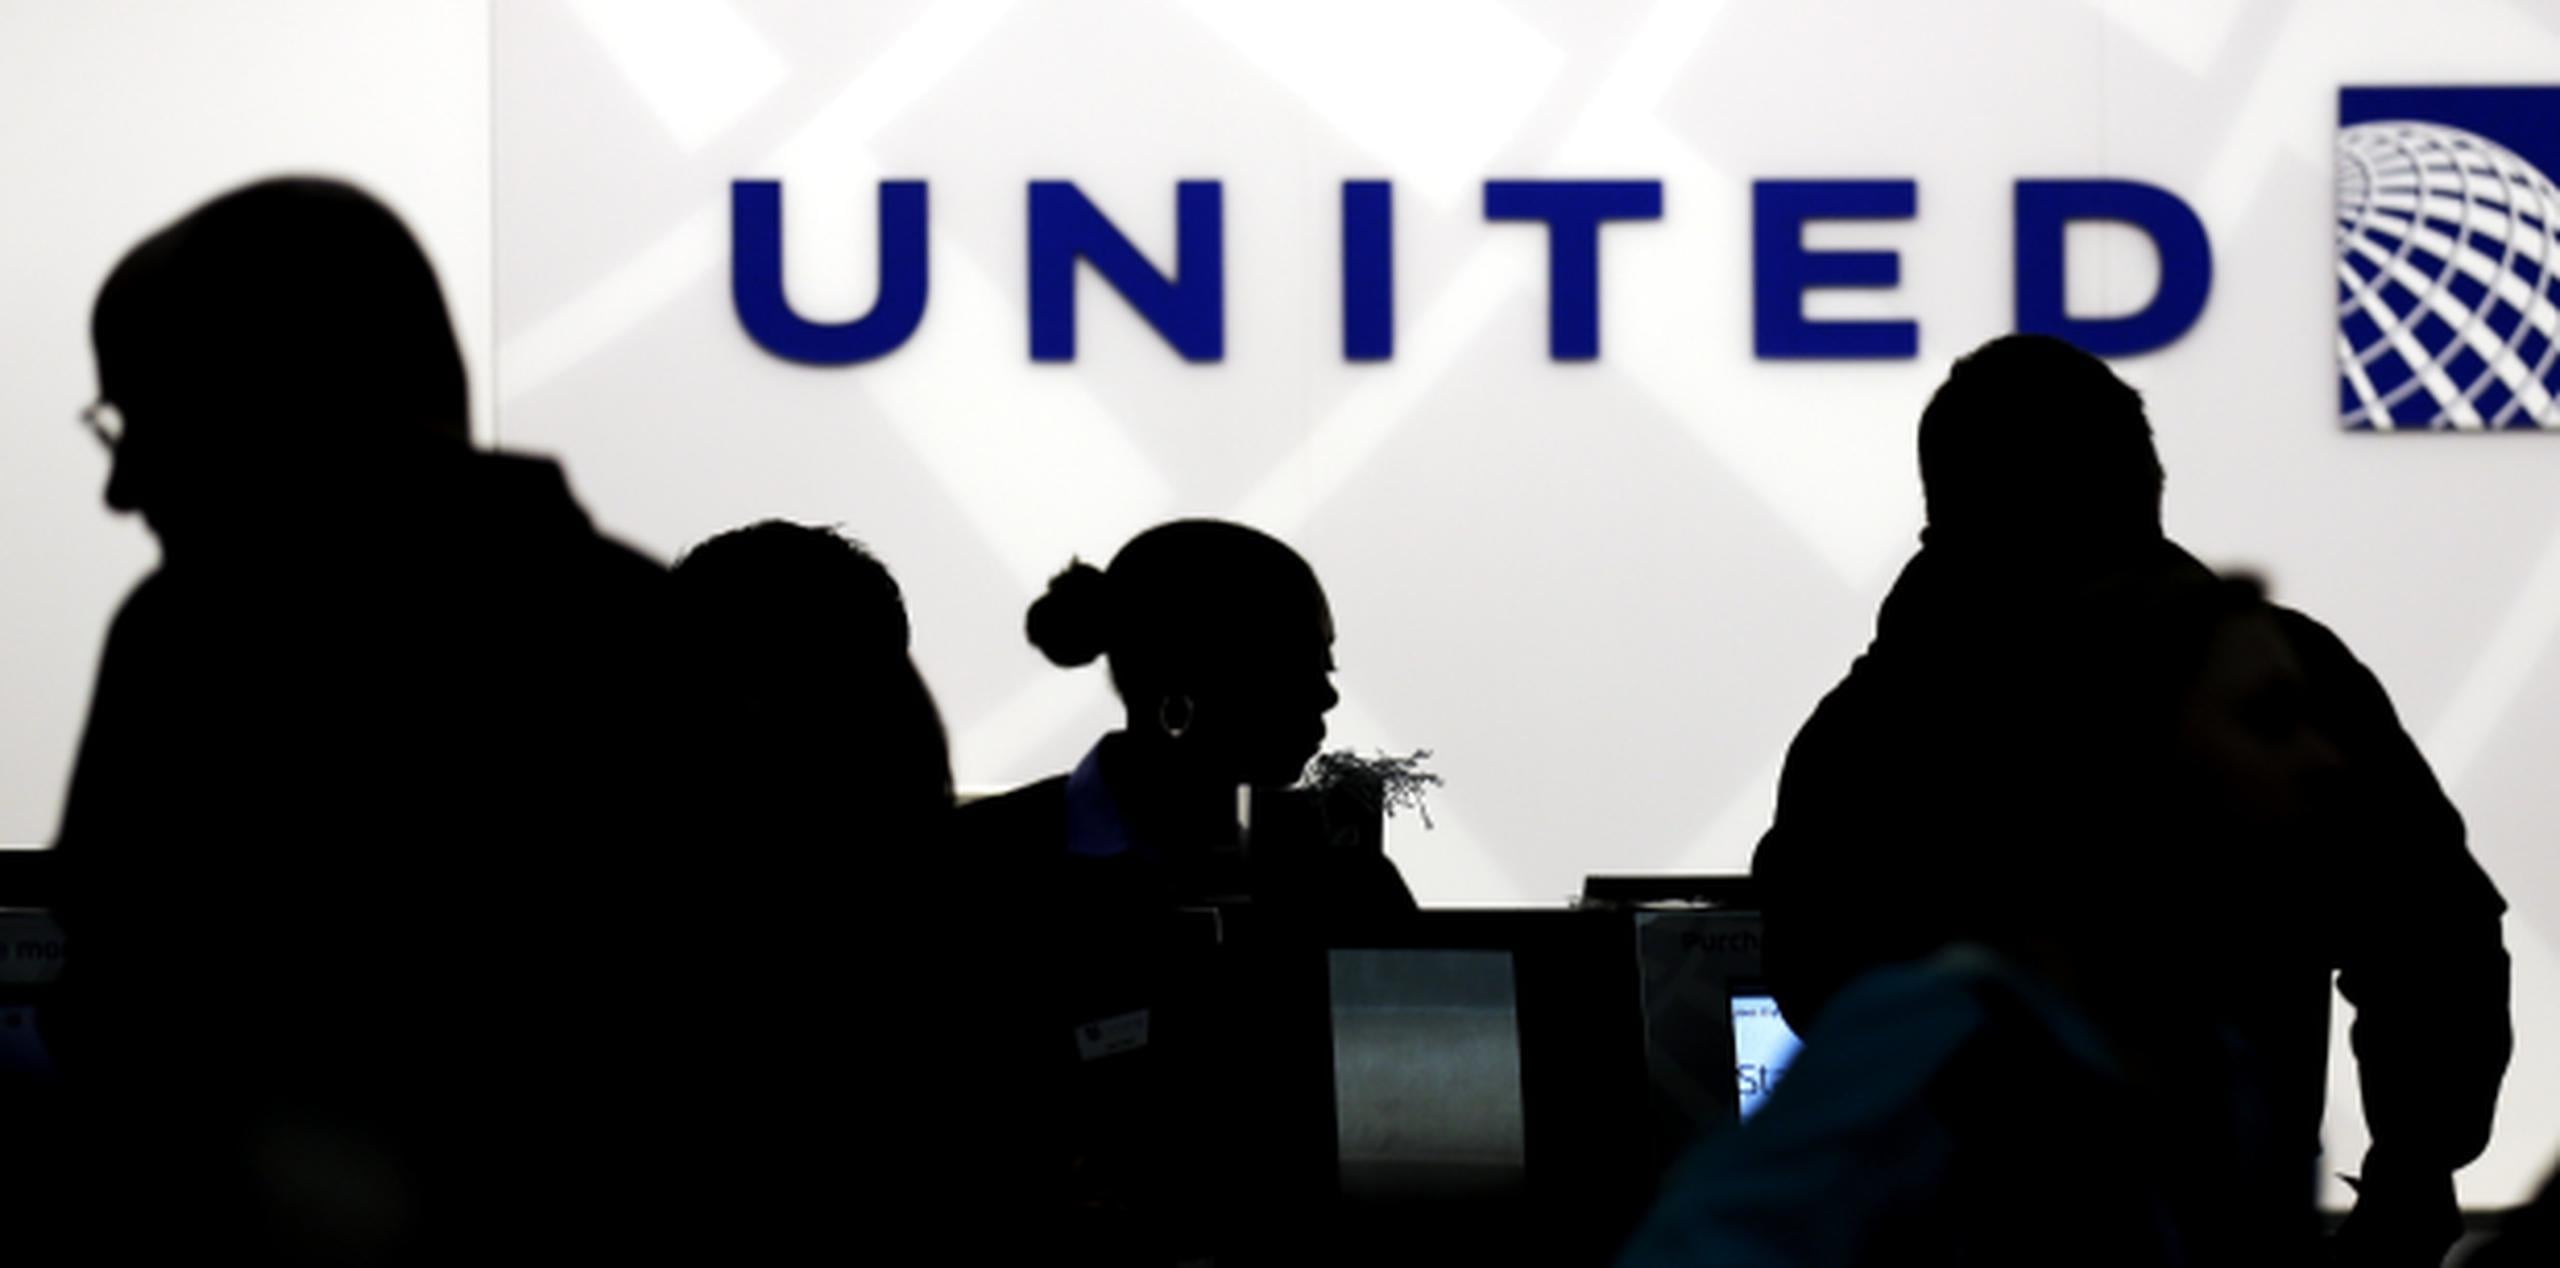 United amenazó con que no despegarían hasta que cuatro personas se levantaran de su asiento y abandonaran la aeronave. (AP / Nam Y. Huh)